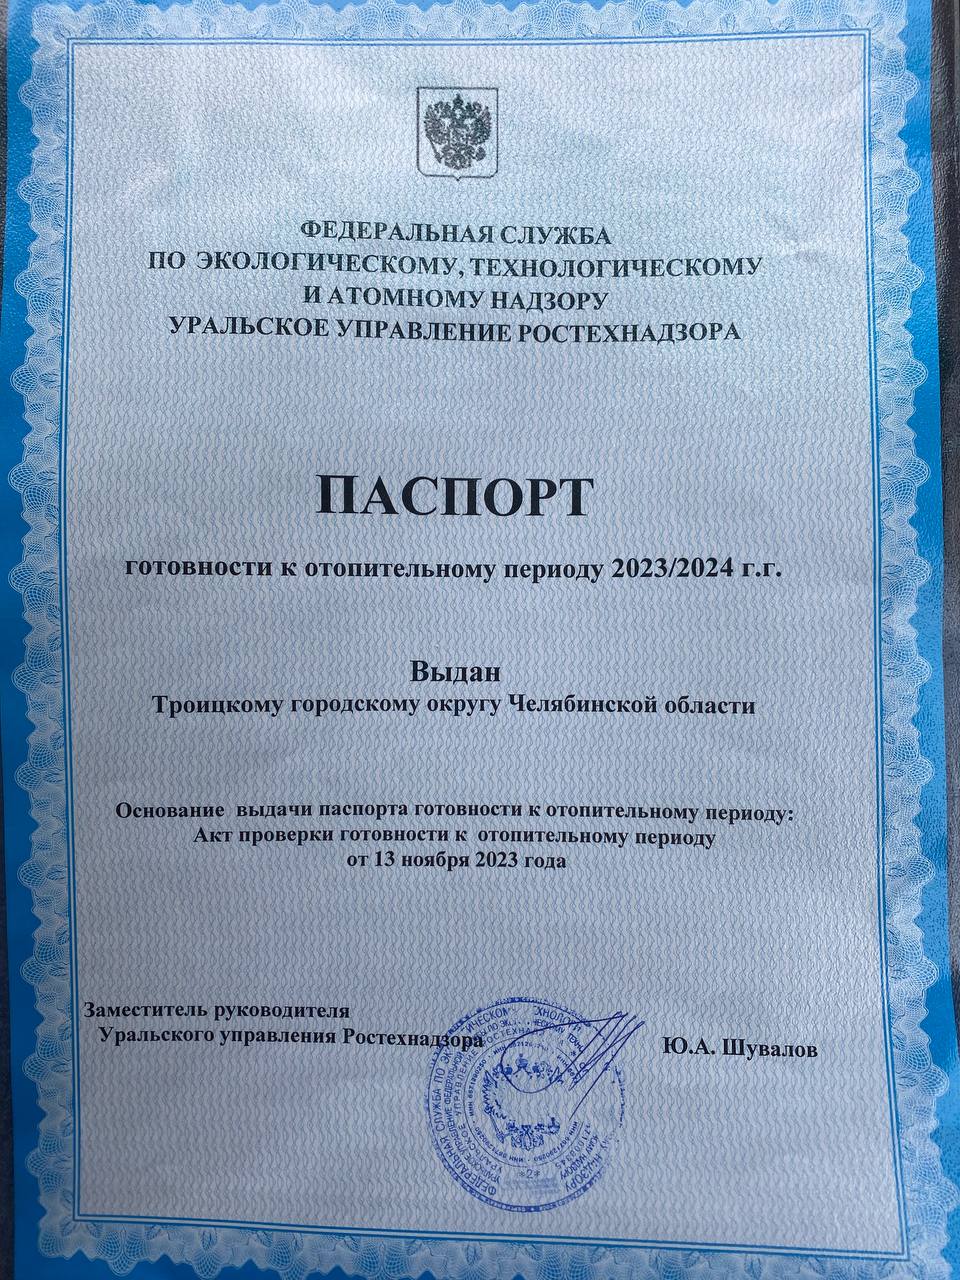 Троицк получил паспорт готовности к отопительному периоду 2023-2024 годов